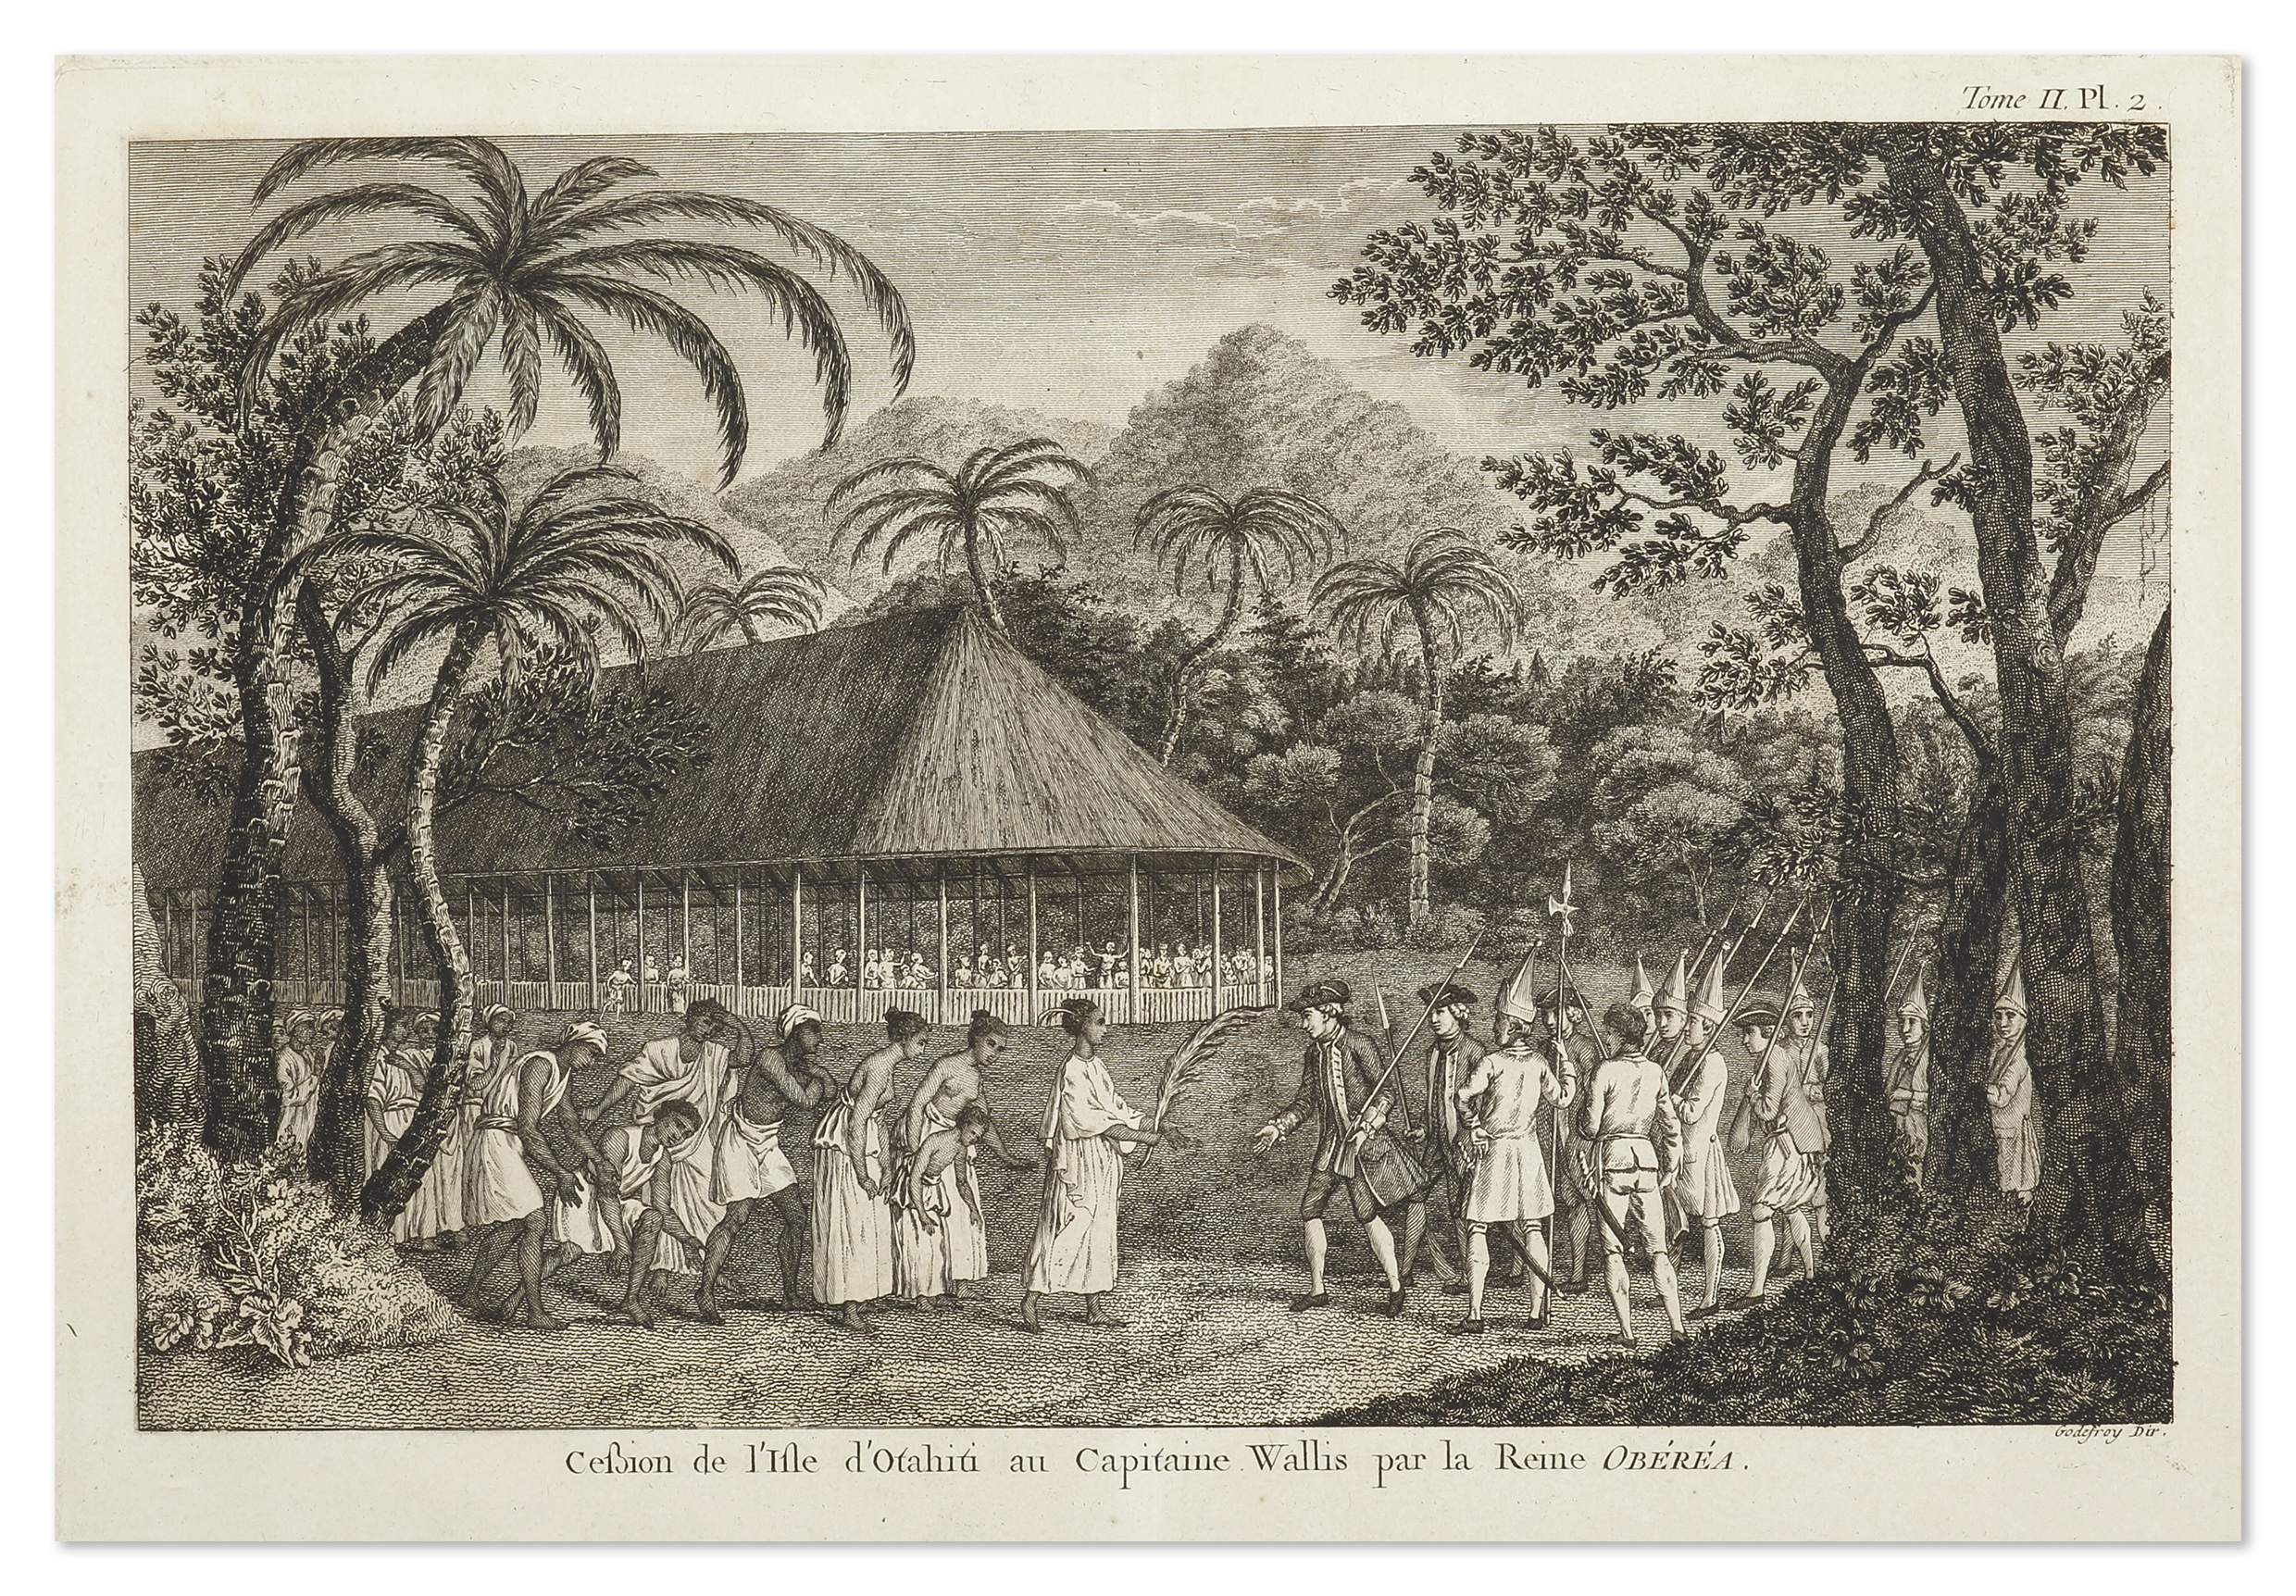 Cession de l'Ile de Otahiti au Capitaine Wallis par la Reine Oberea. - Antique View from 1774